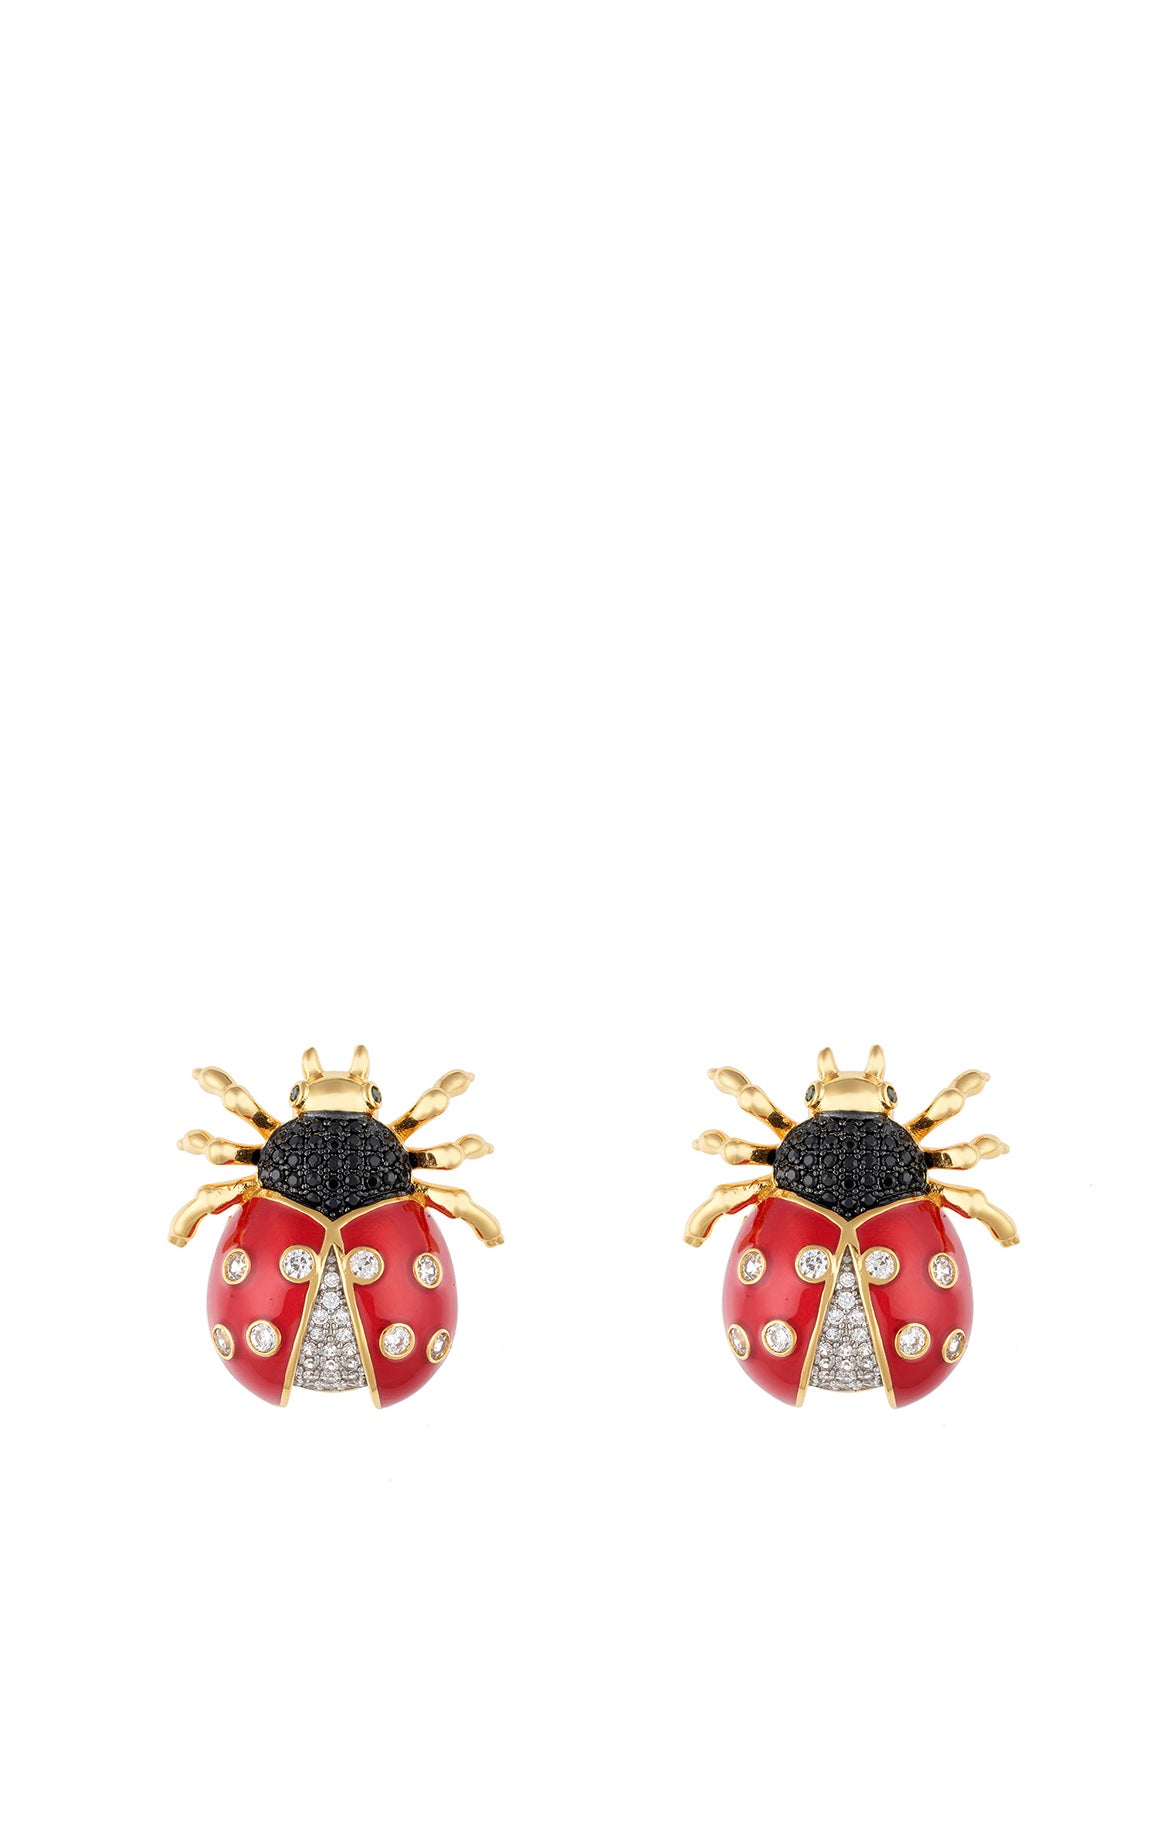 Red Crystal LadyBug Stud Earrings